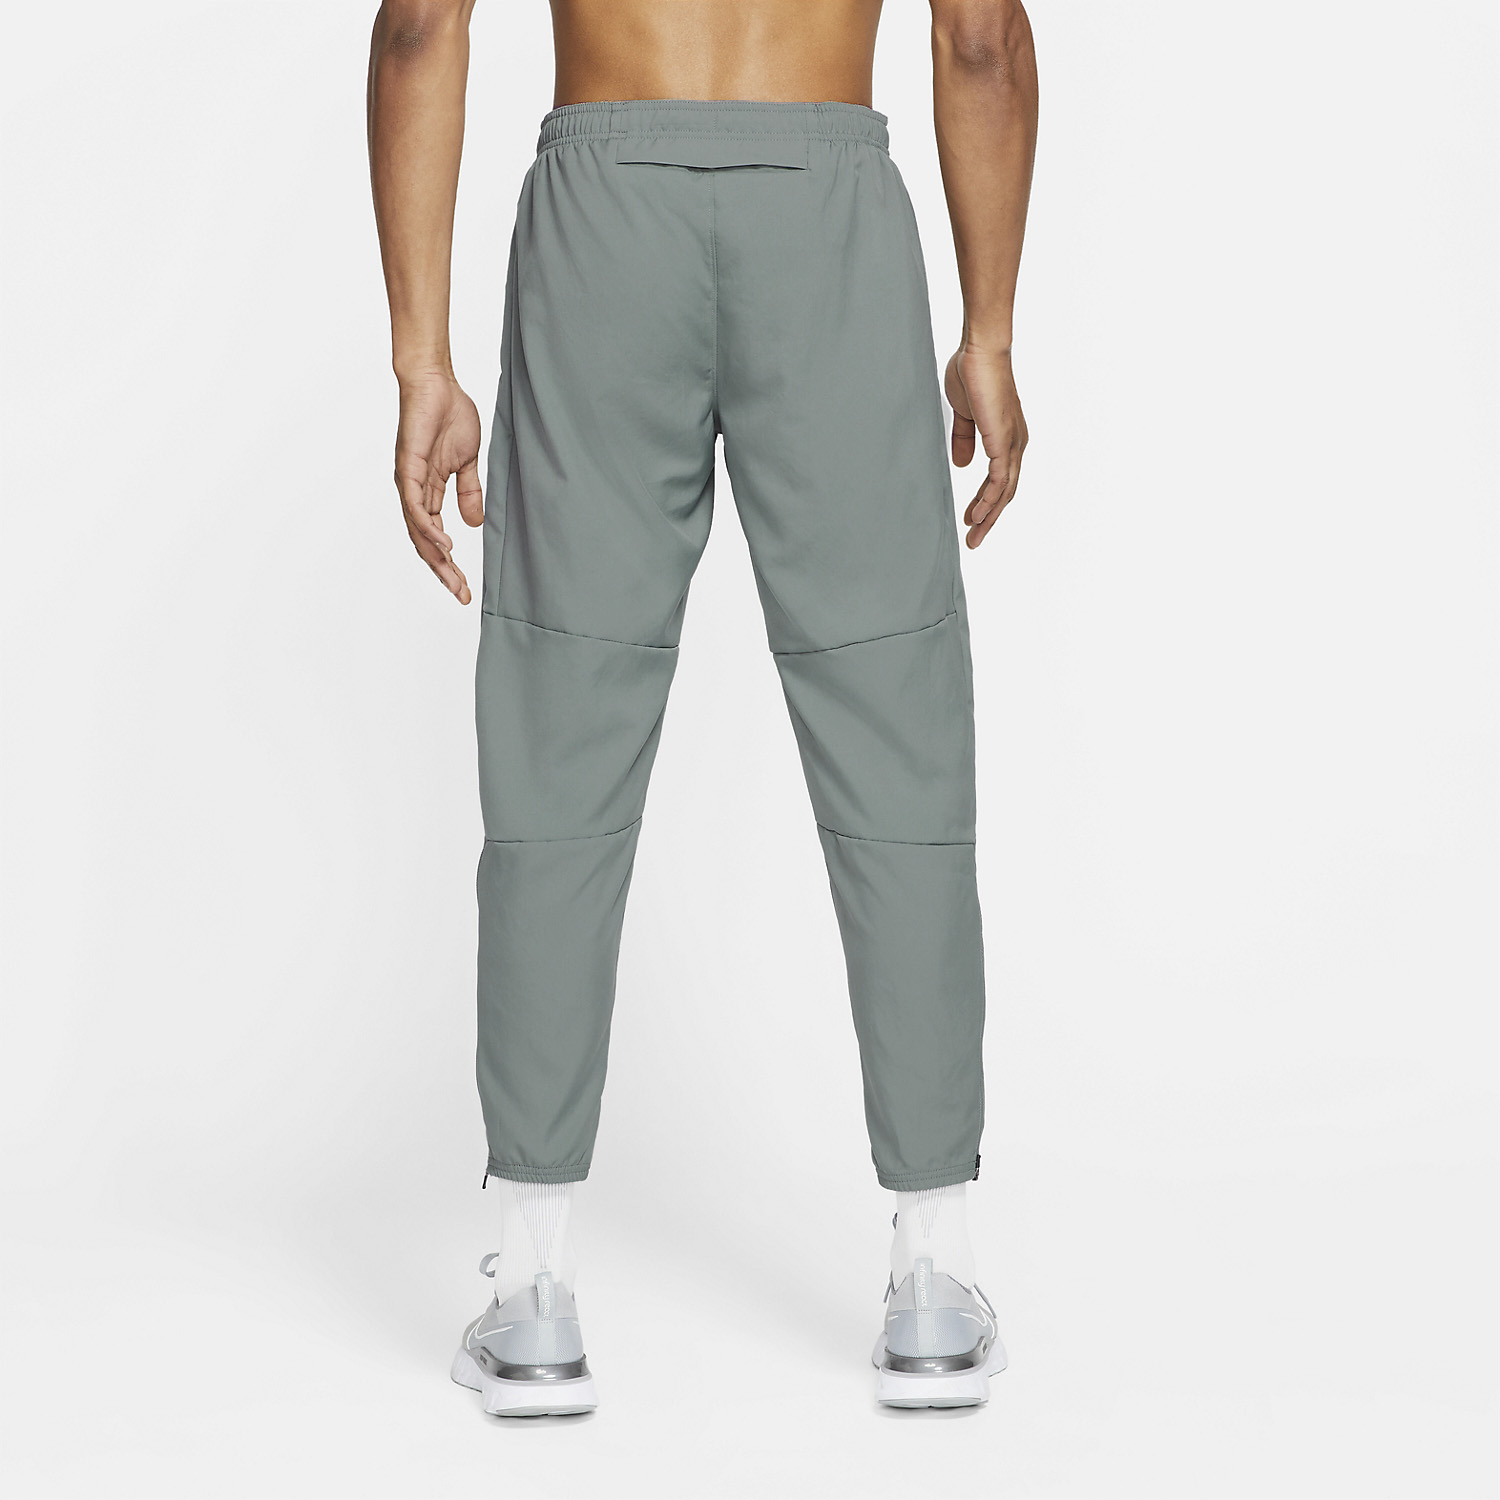 Nike Dri-FIT Challenger Men's Running Pants - Smoke Grey